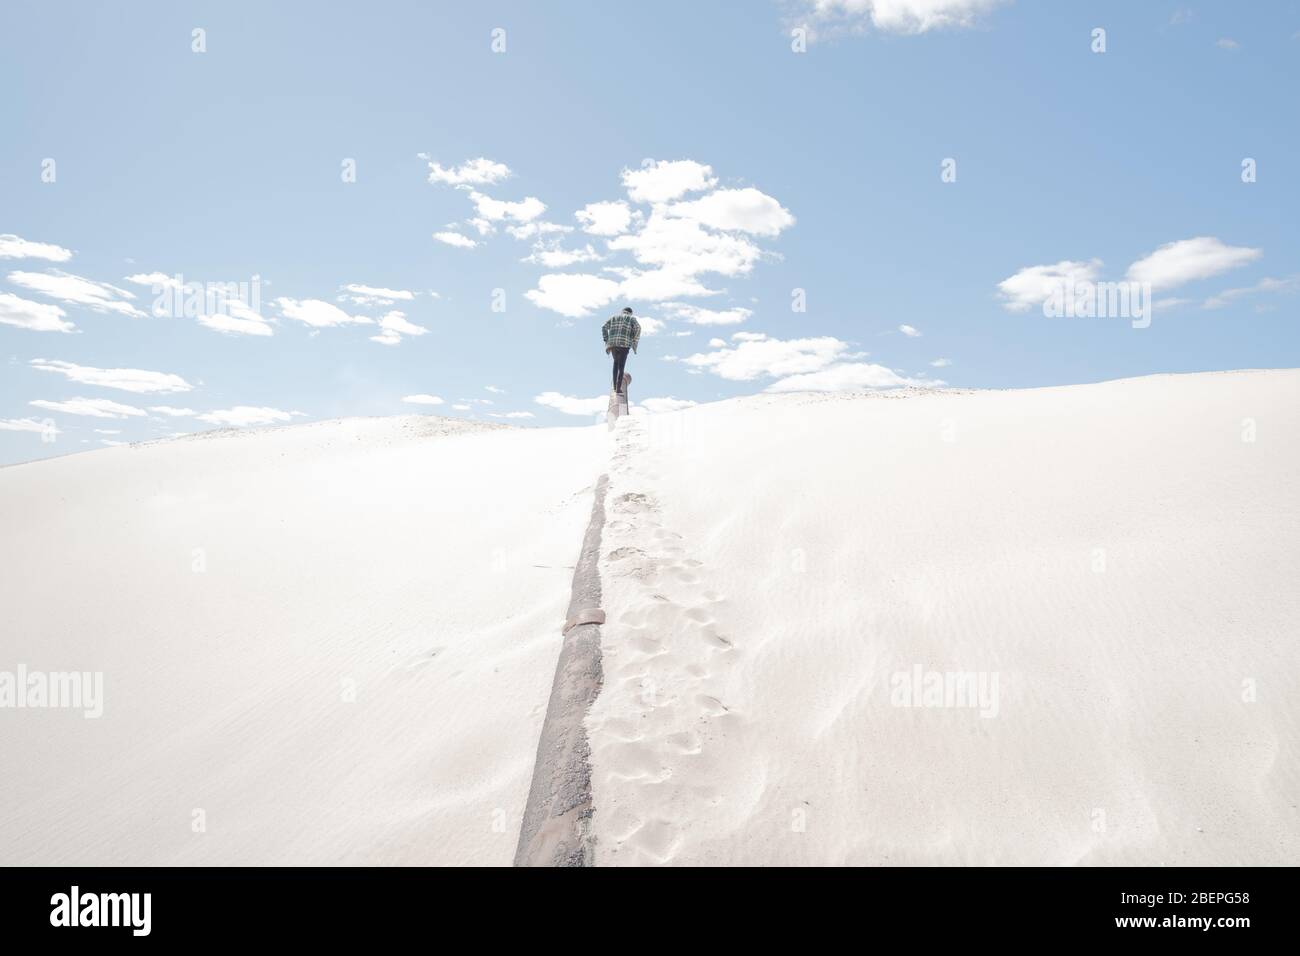 Mann geht weg und hinauf, sandiger Hintergrund. Konzeptuelles Bild Panoramabild in Sand mit Figur der männlichen Person in der Mitte Stockfoto